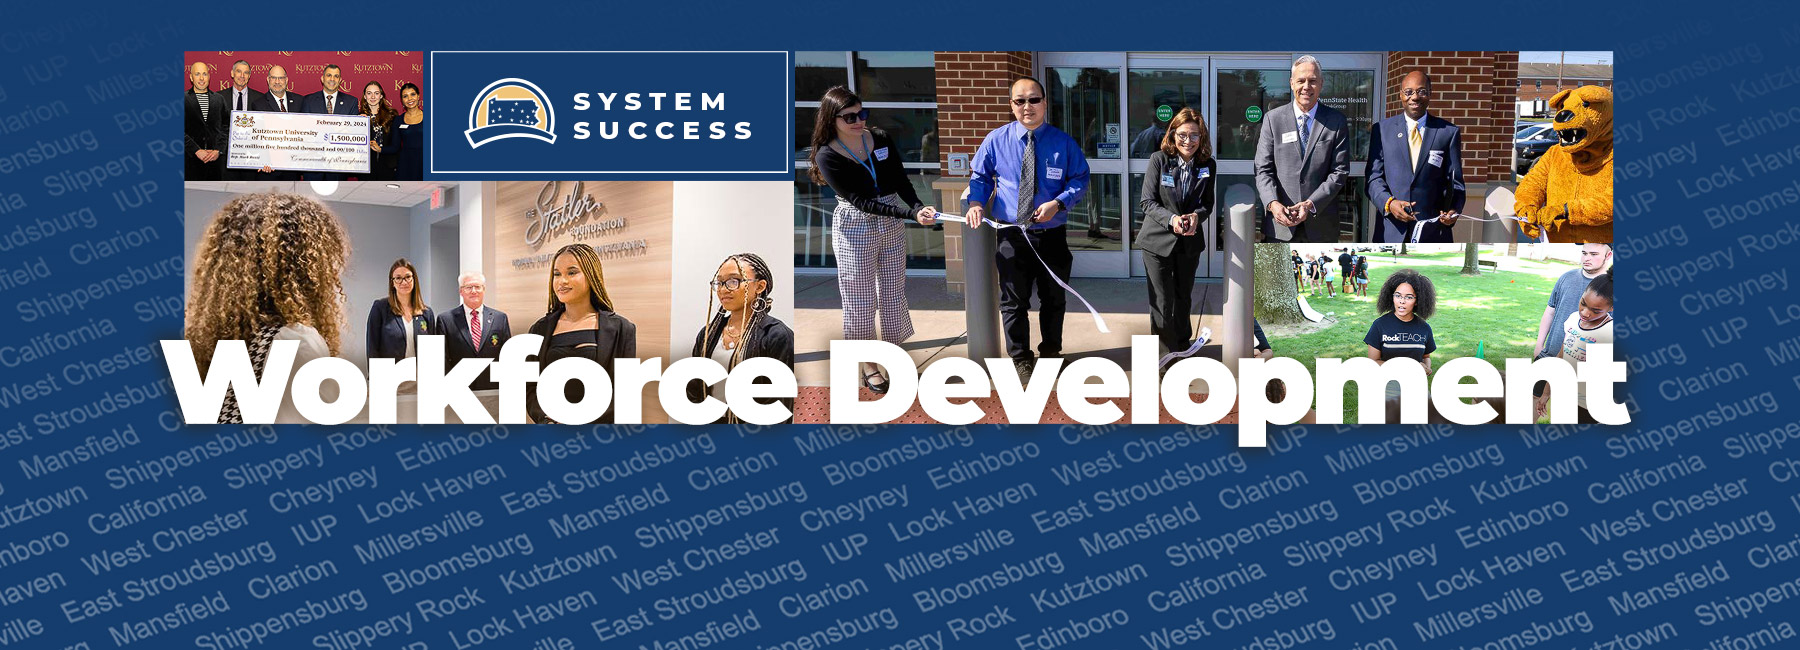 Workforce Development - System Success banner